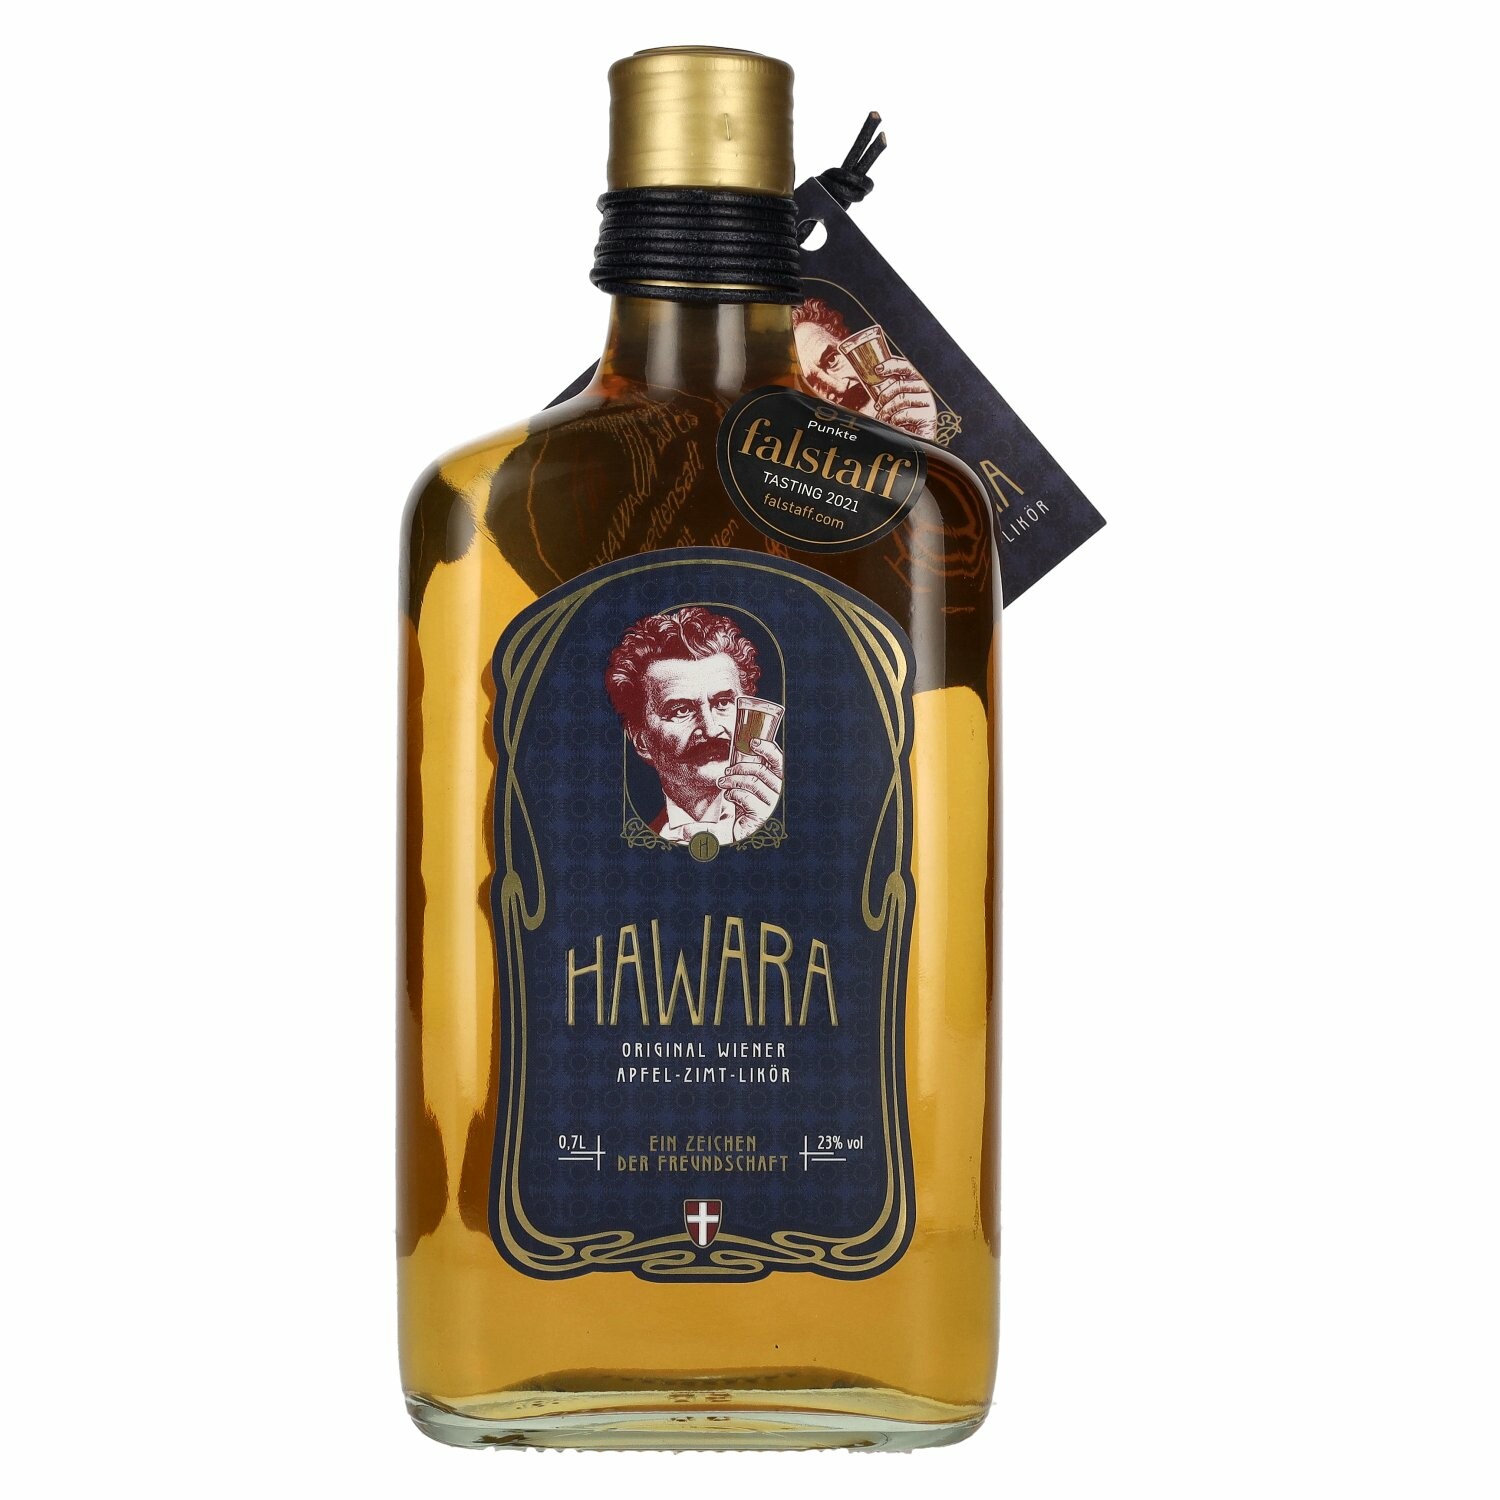 HAWARA Apfel-Zimt-Likör 23% Vol. 0,7l